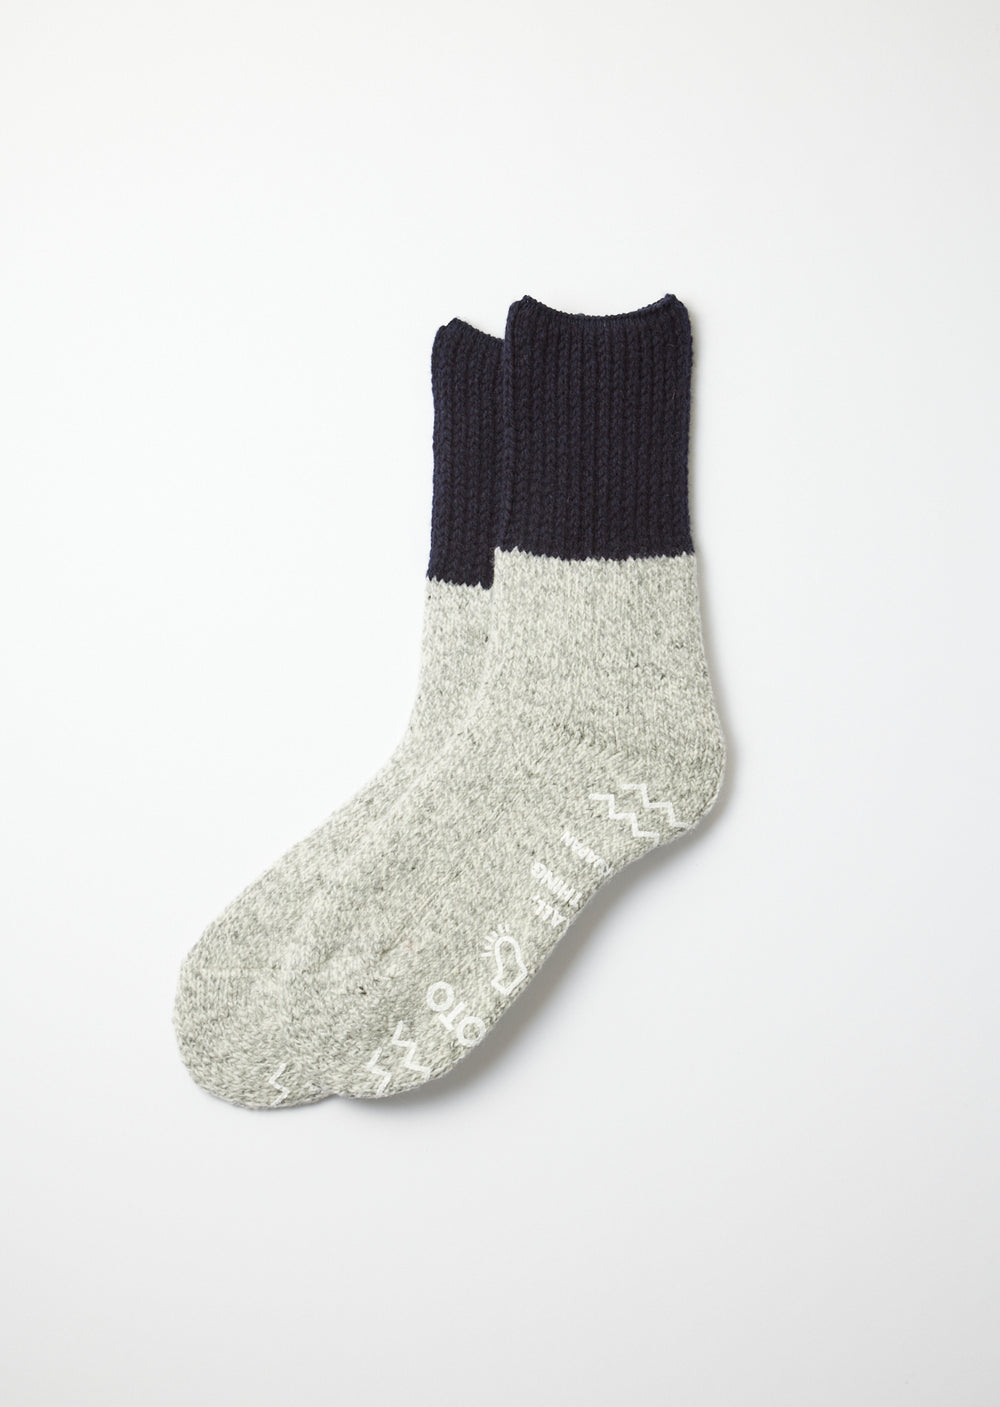 Retro Winter Room Socks - Navy/Grey - R1486